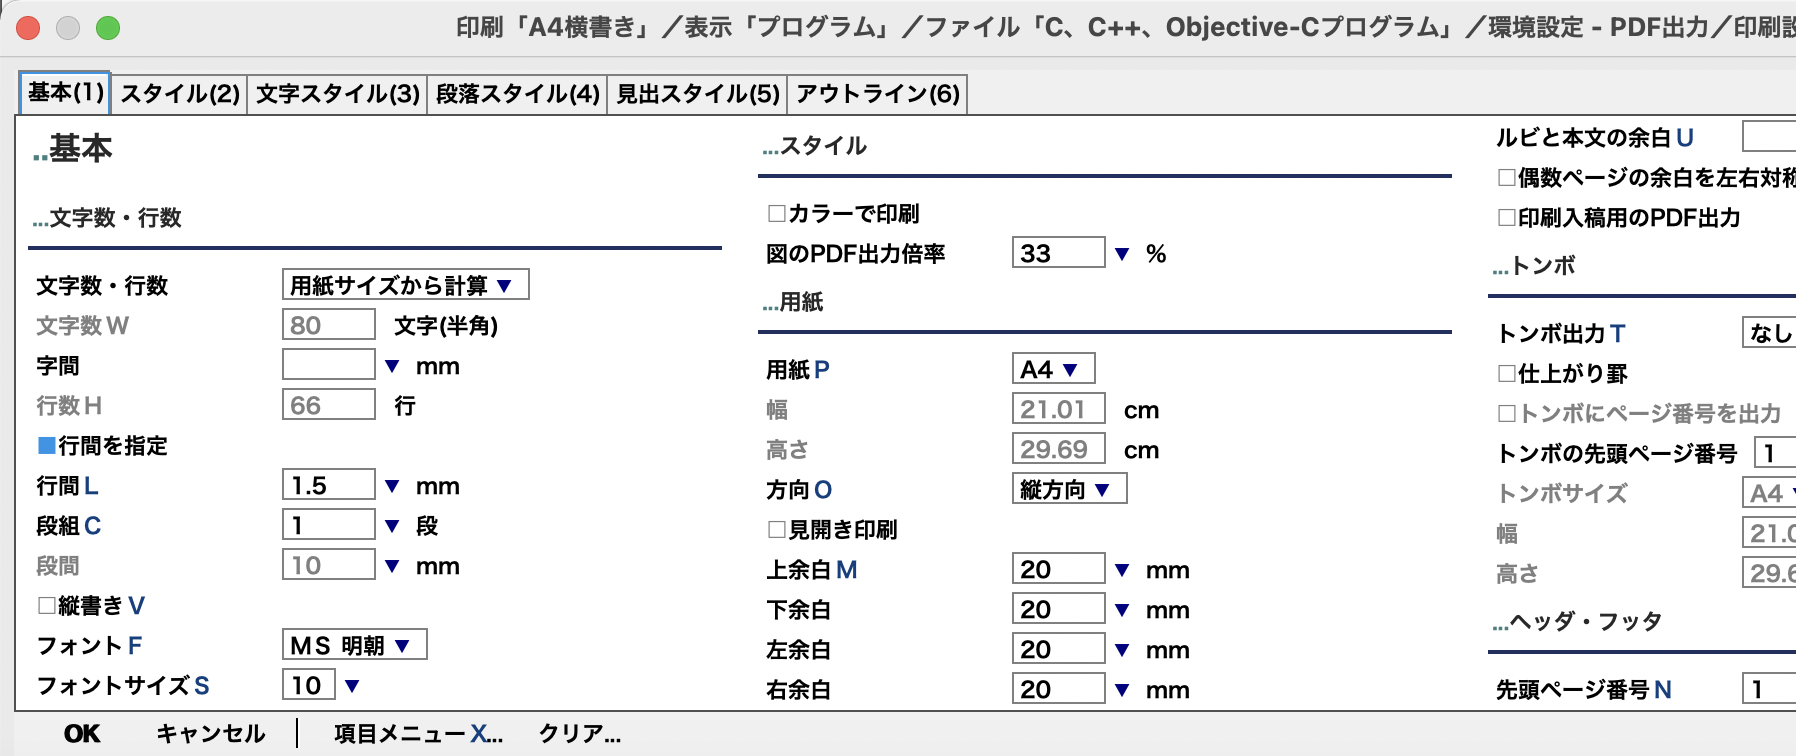 Wz Editor For Mac 日本語テキストエディタ Htmlワードプロセッサ For Macos 日本語スマート入力 C C C Java Javascript Phpスマート入力 リファレンス Html Pdf Epub出力 アウトラインプロセッサ